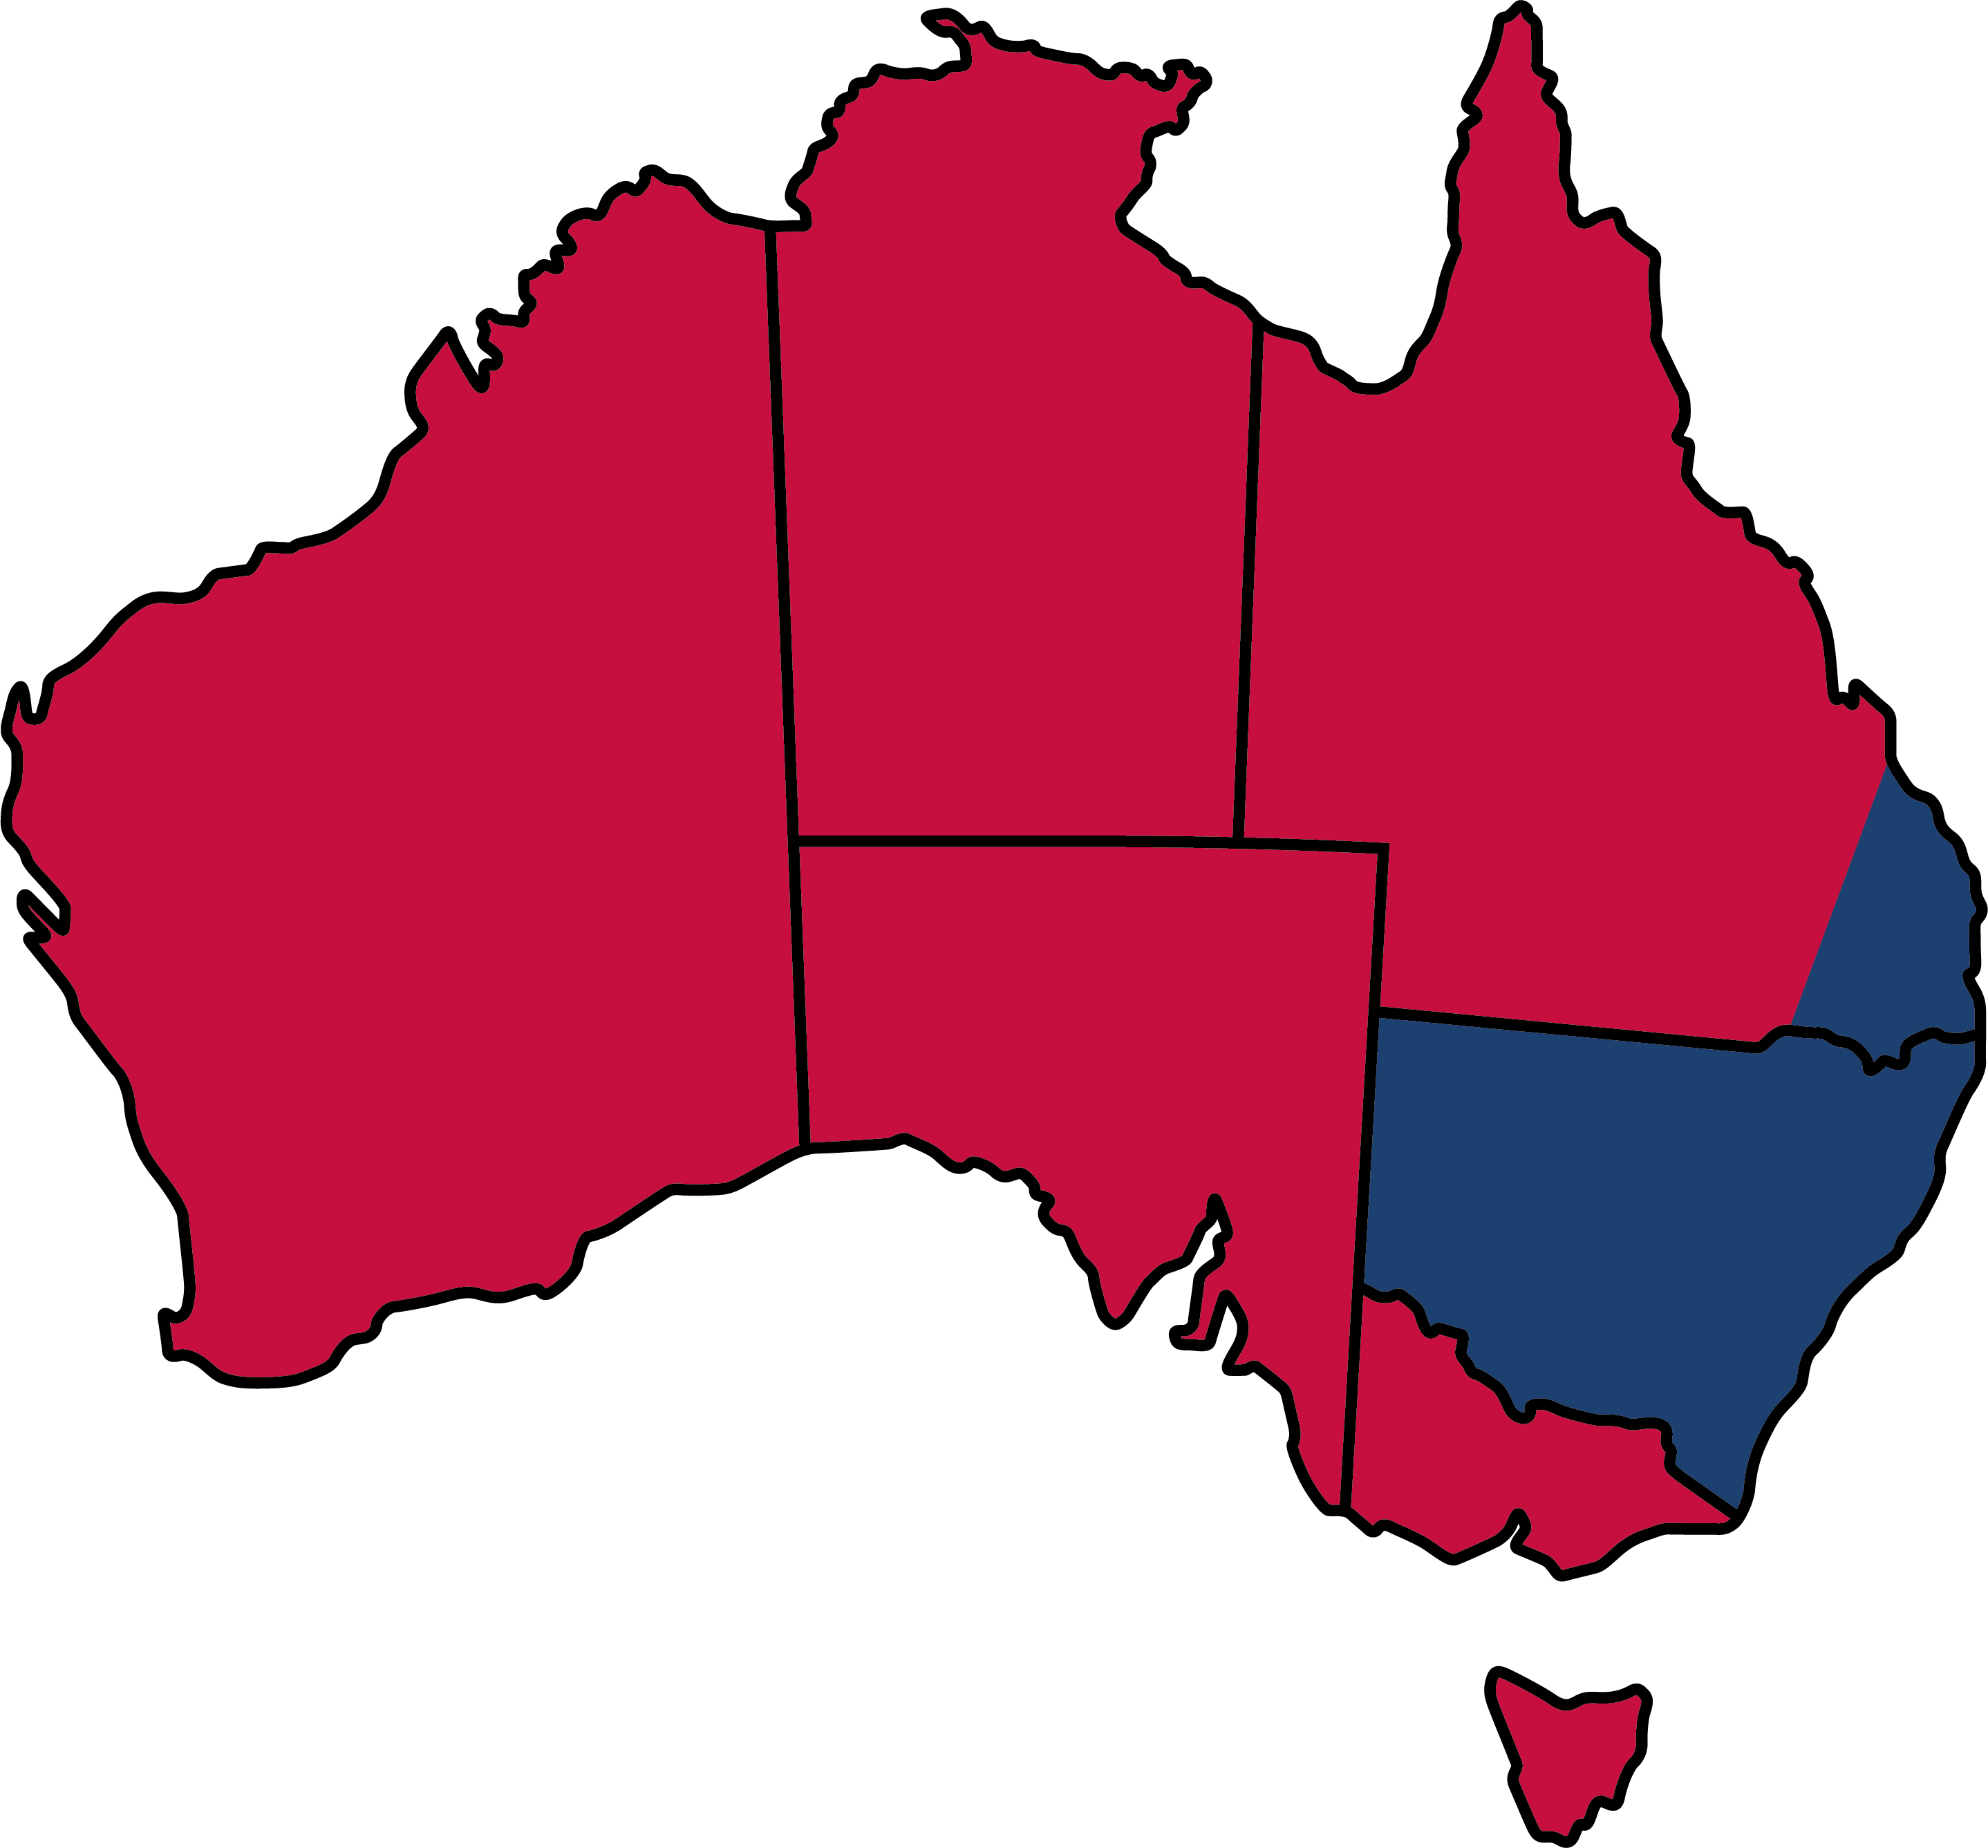 Australia territories